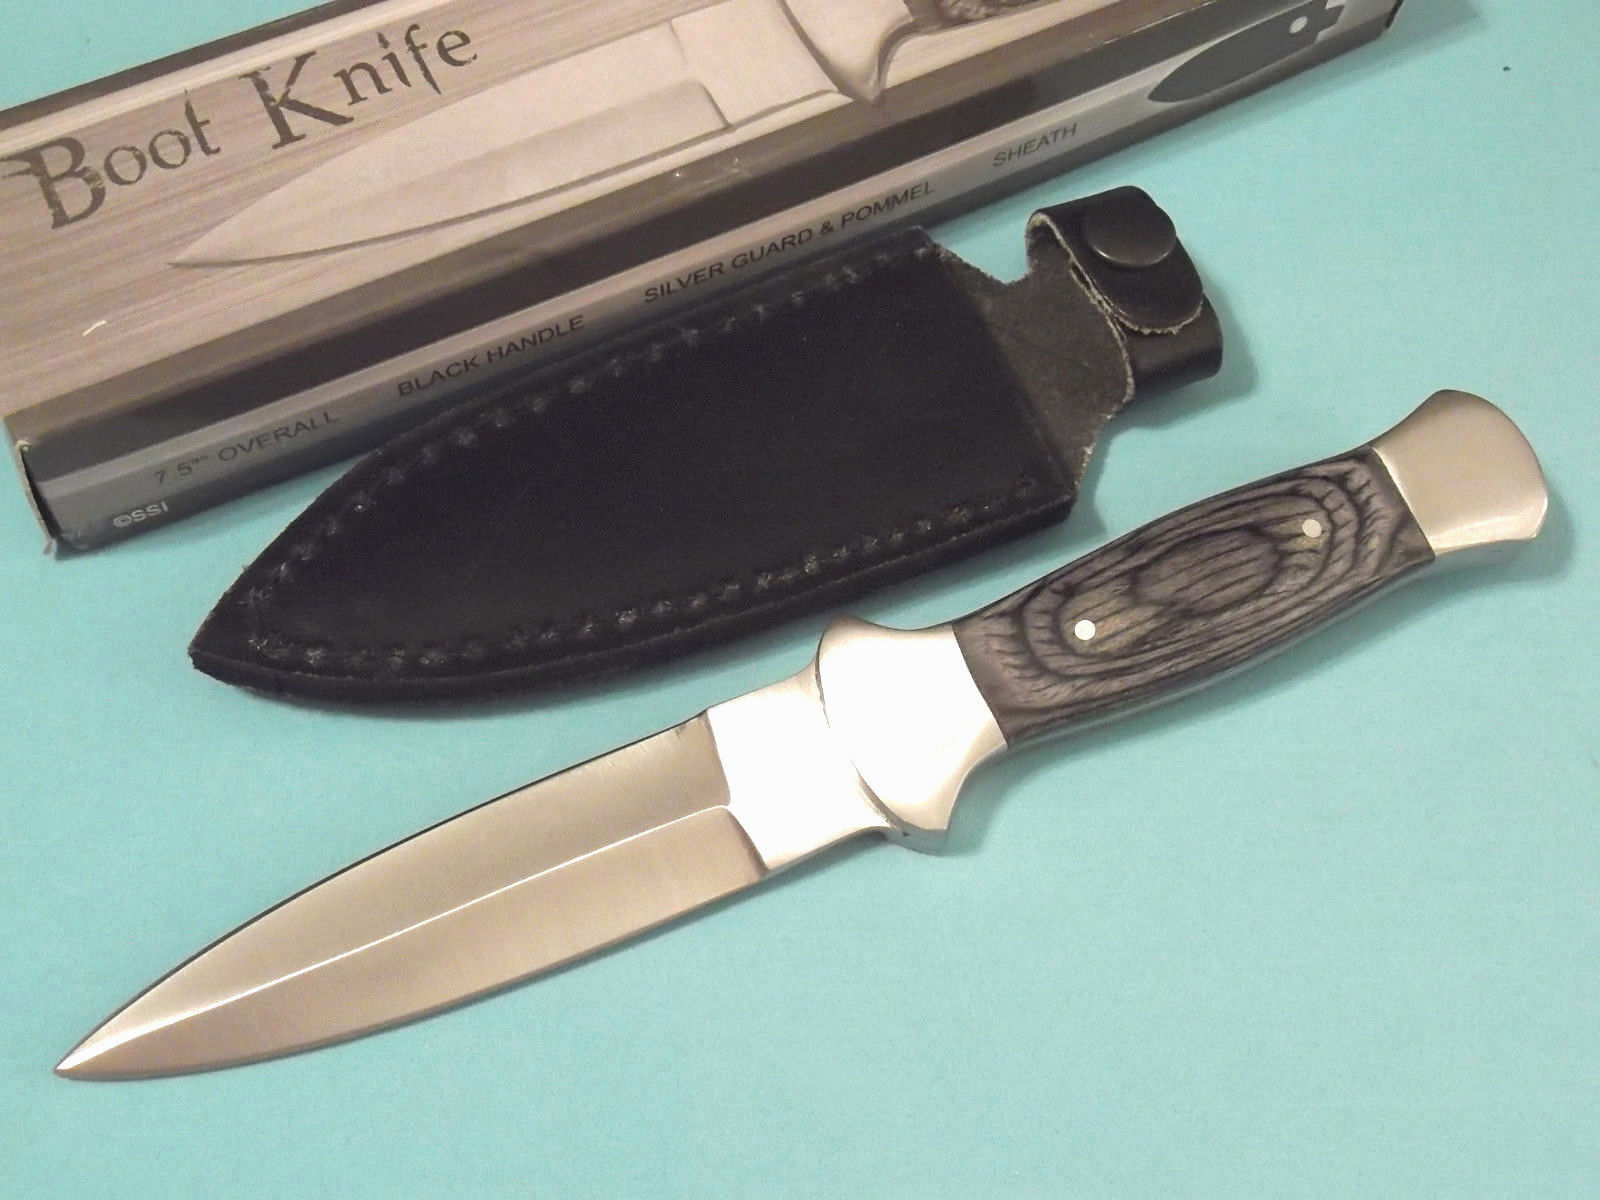 Boot Knife 203403 Black wood dagger full tang knife 7 1/2